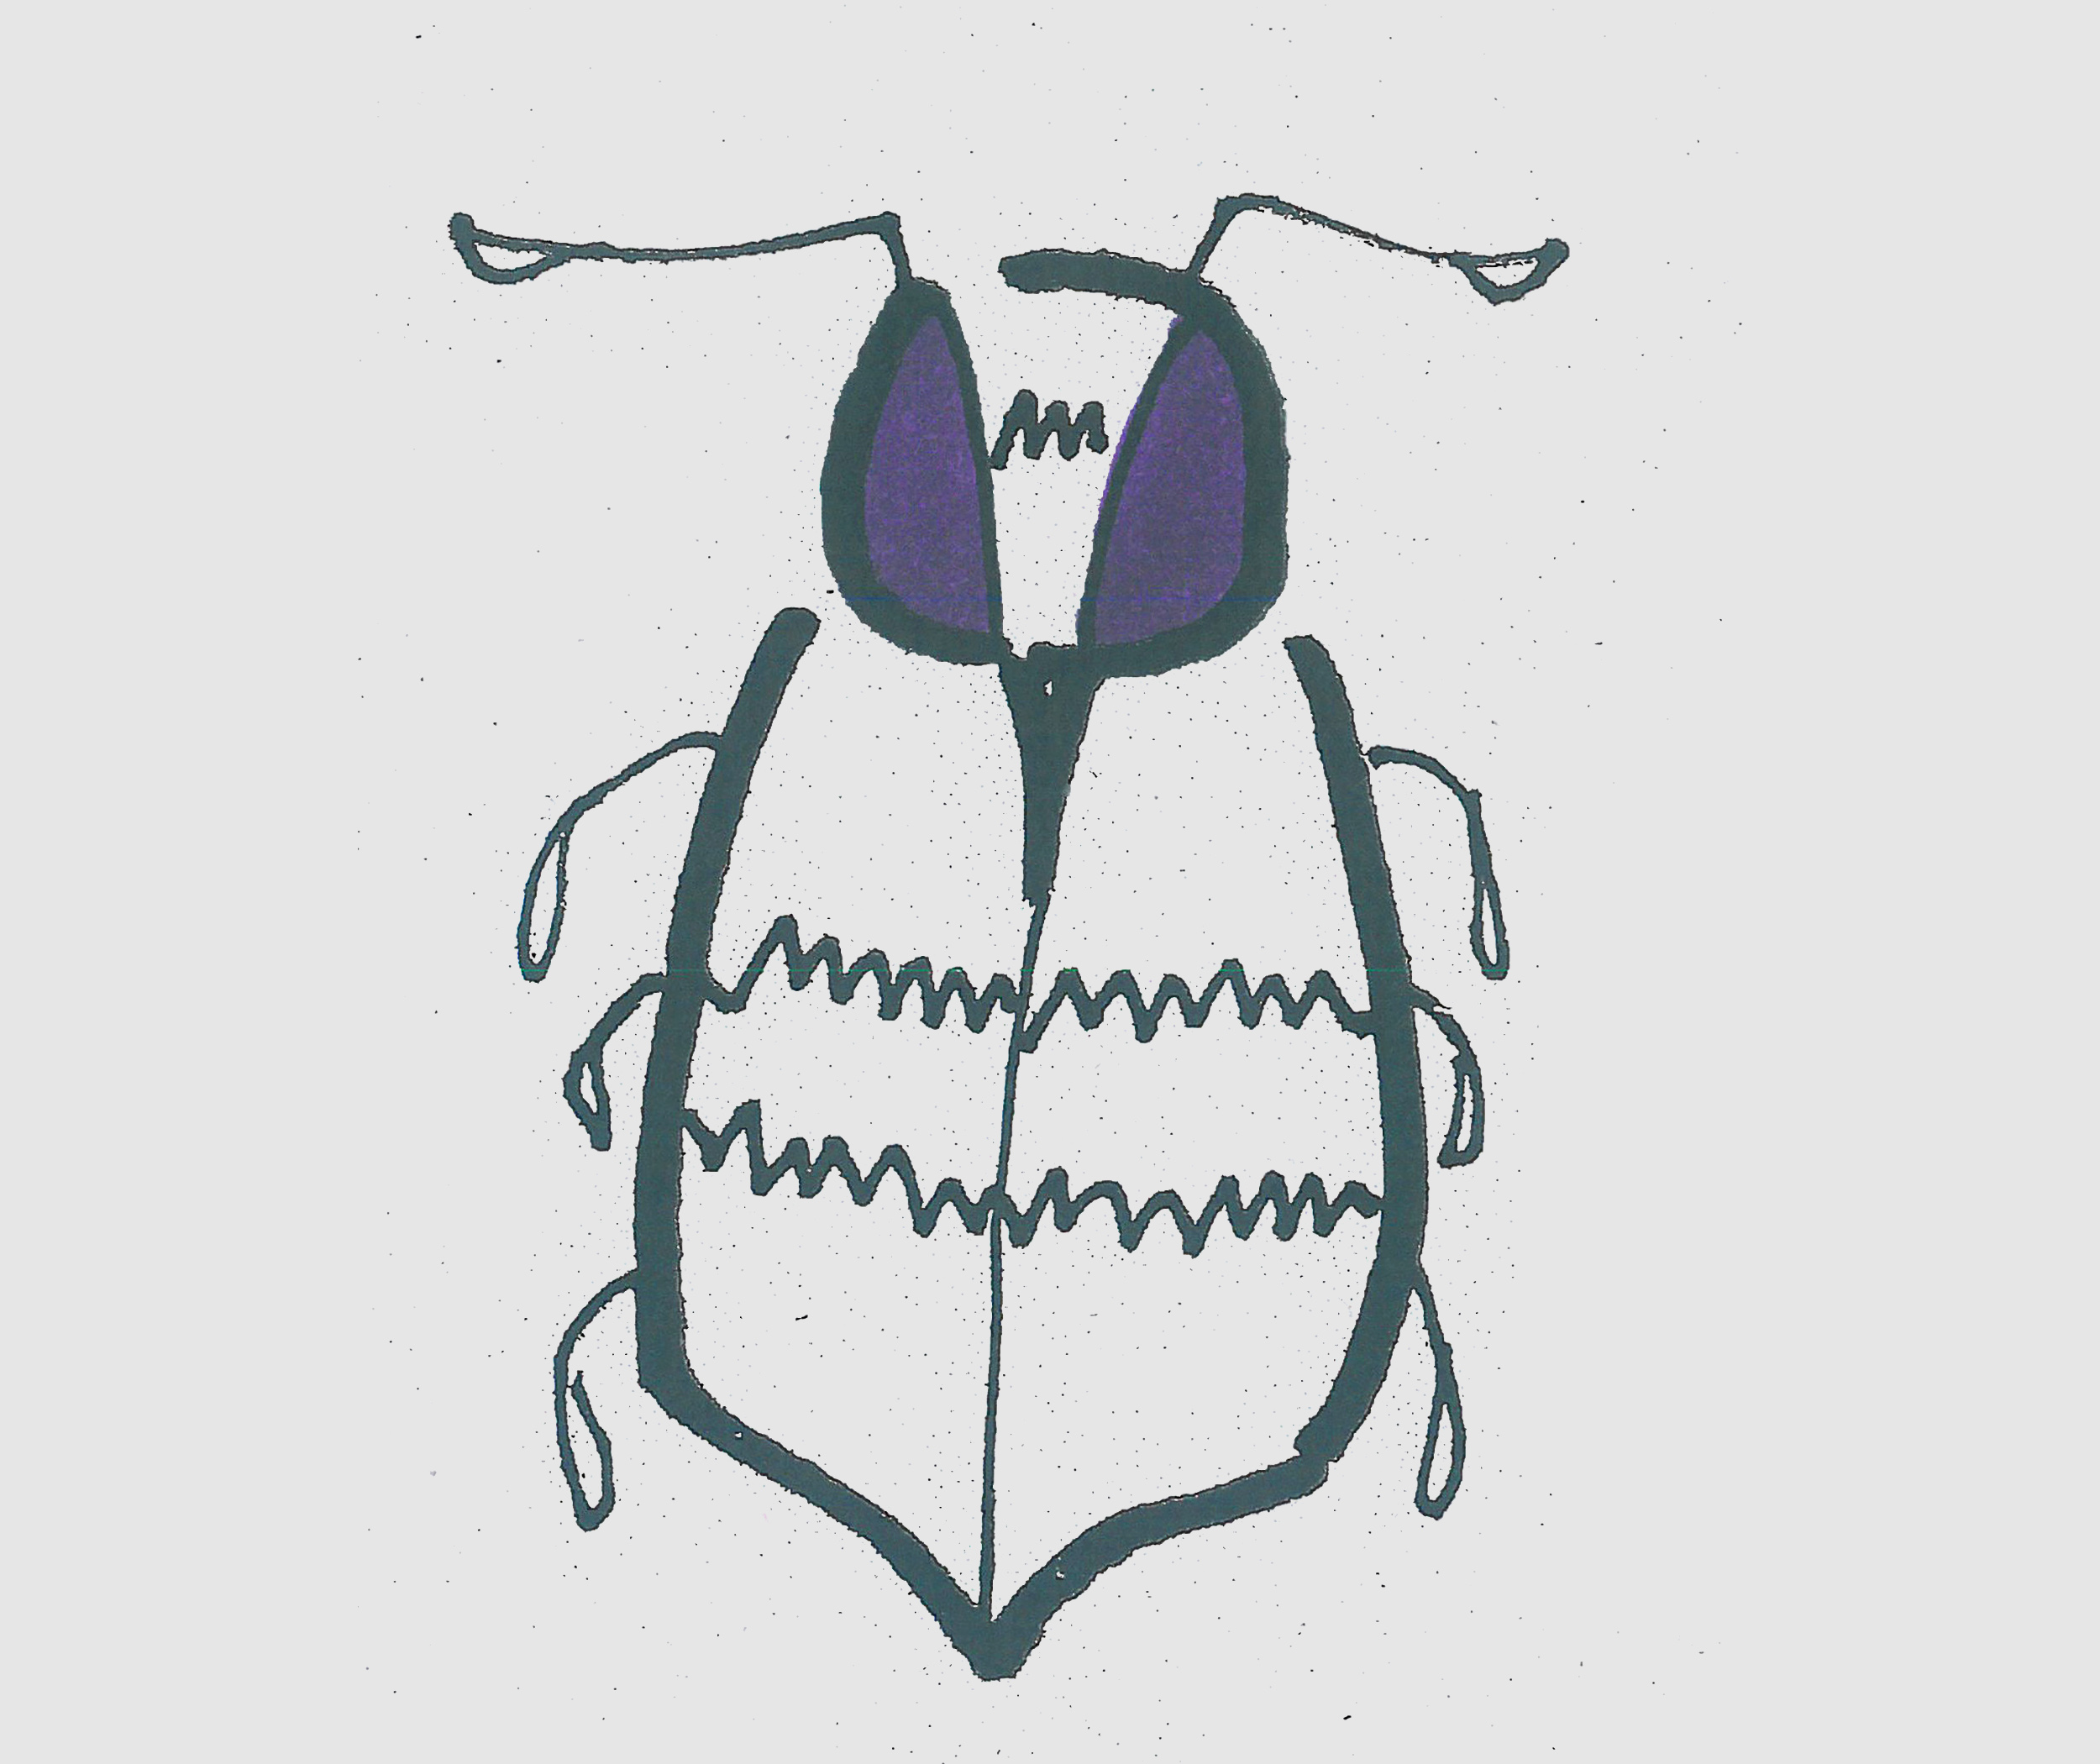 儿童简笔画带颜色甲虫 一步一步教可爱小甲虫画法